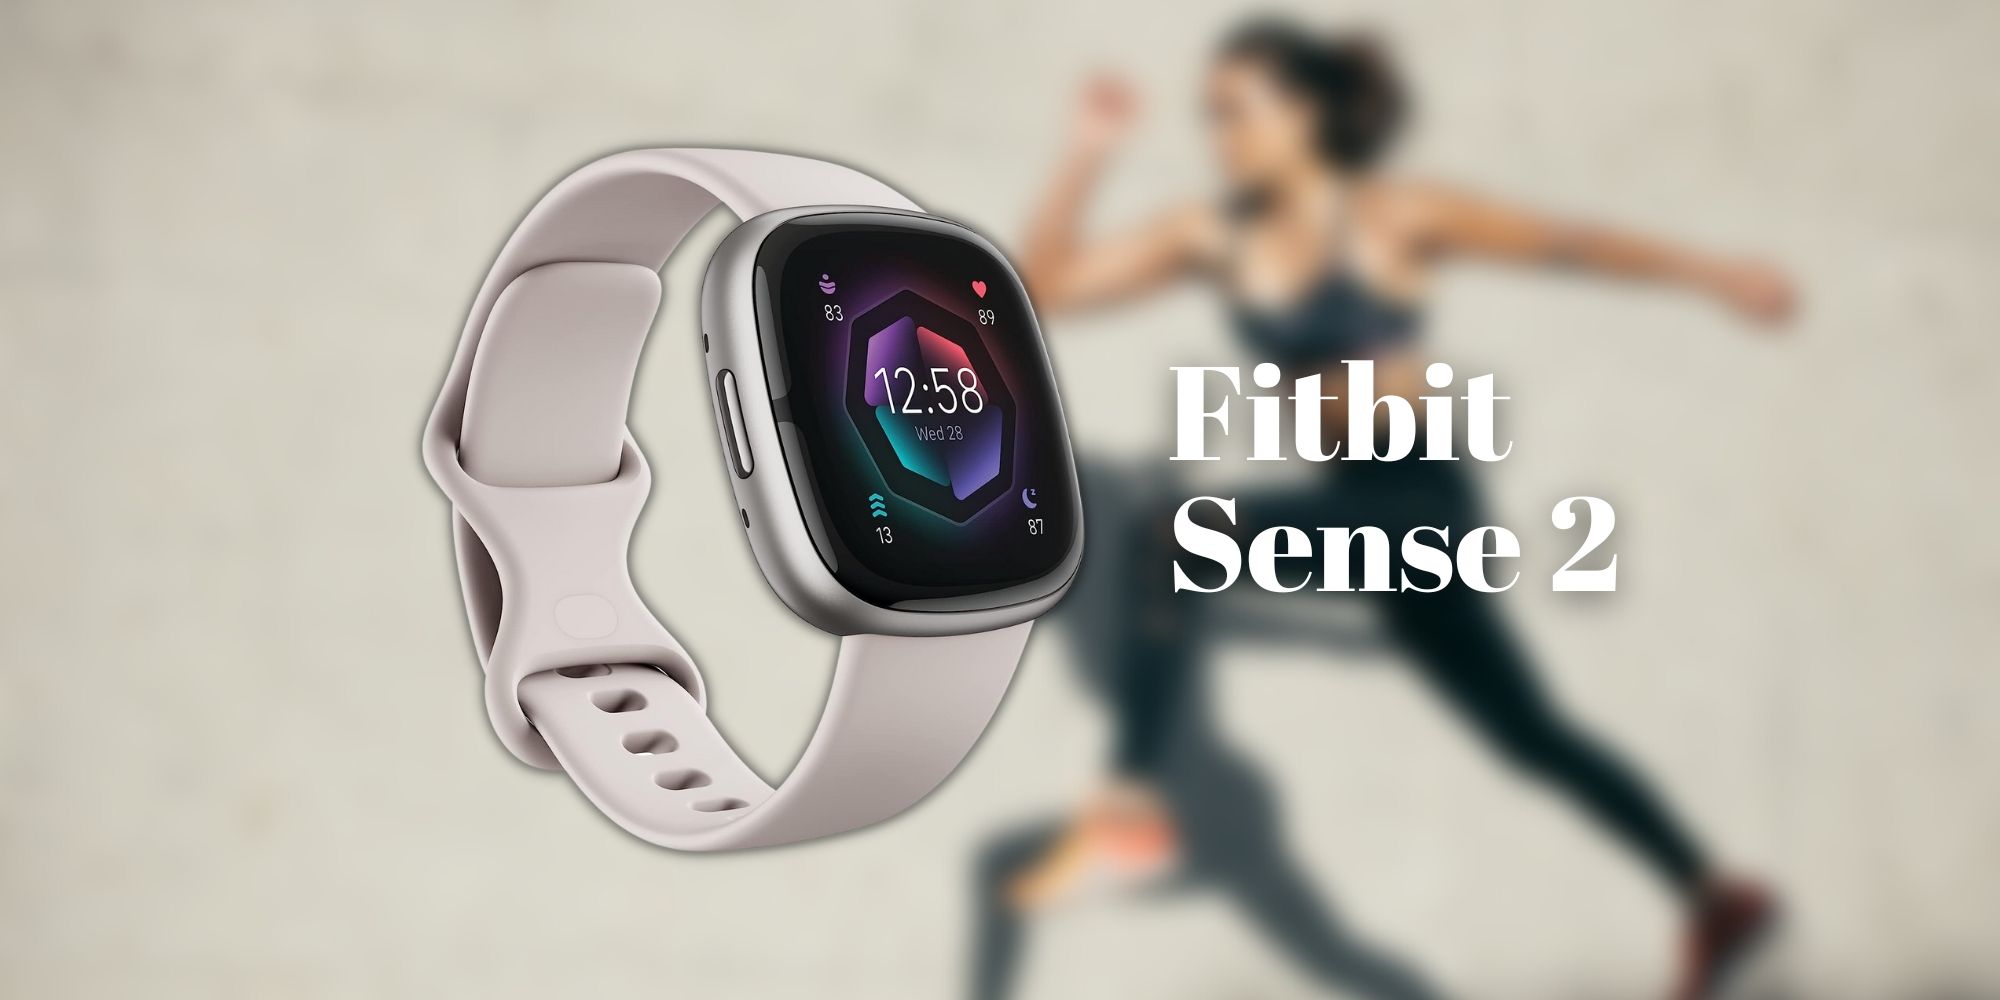 Actúe rápido para obtener el rastreador de salud más avanzado de Fitbit con un descuento de $70